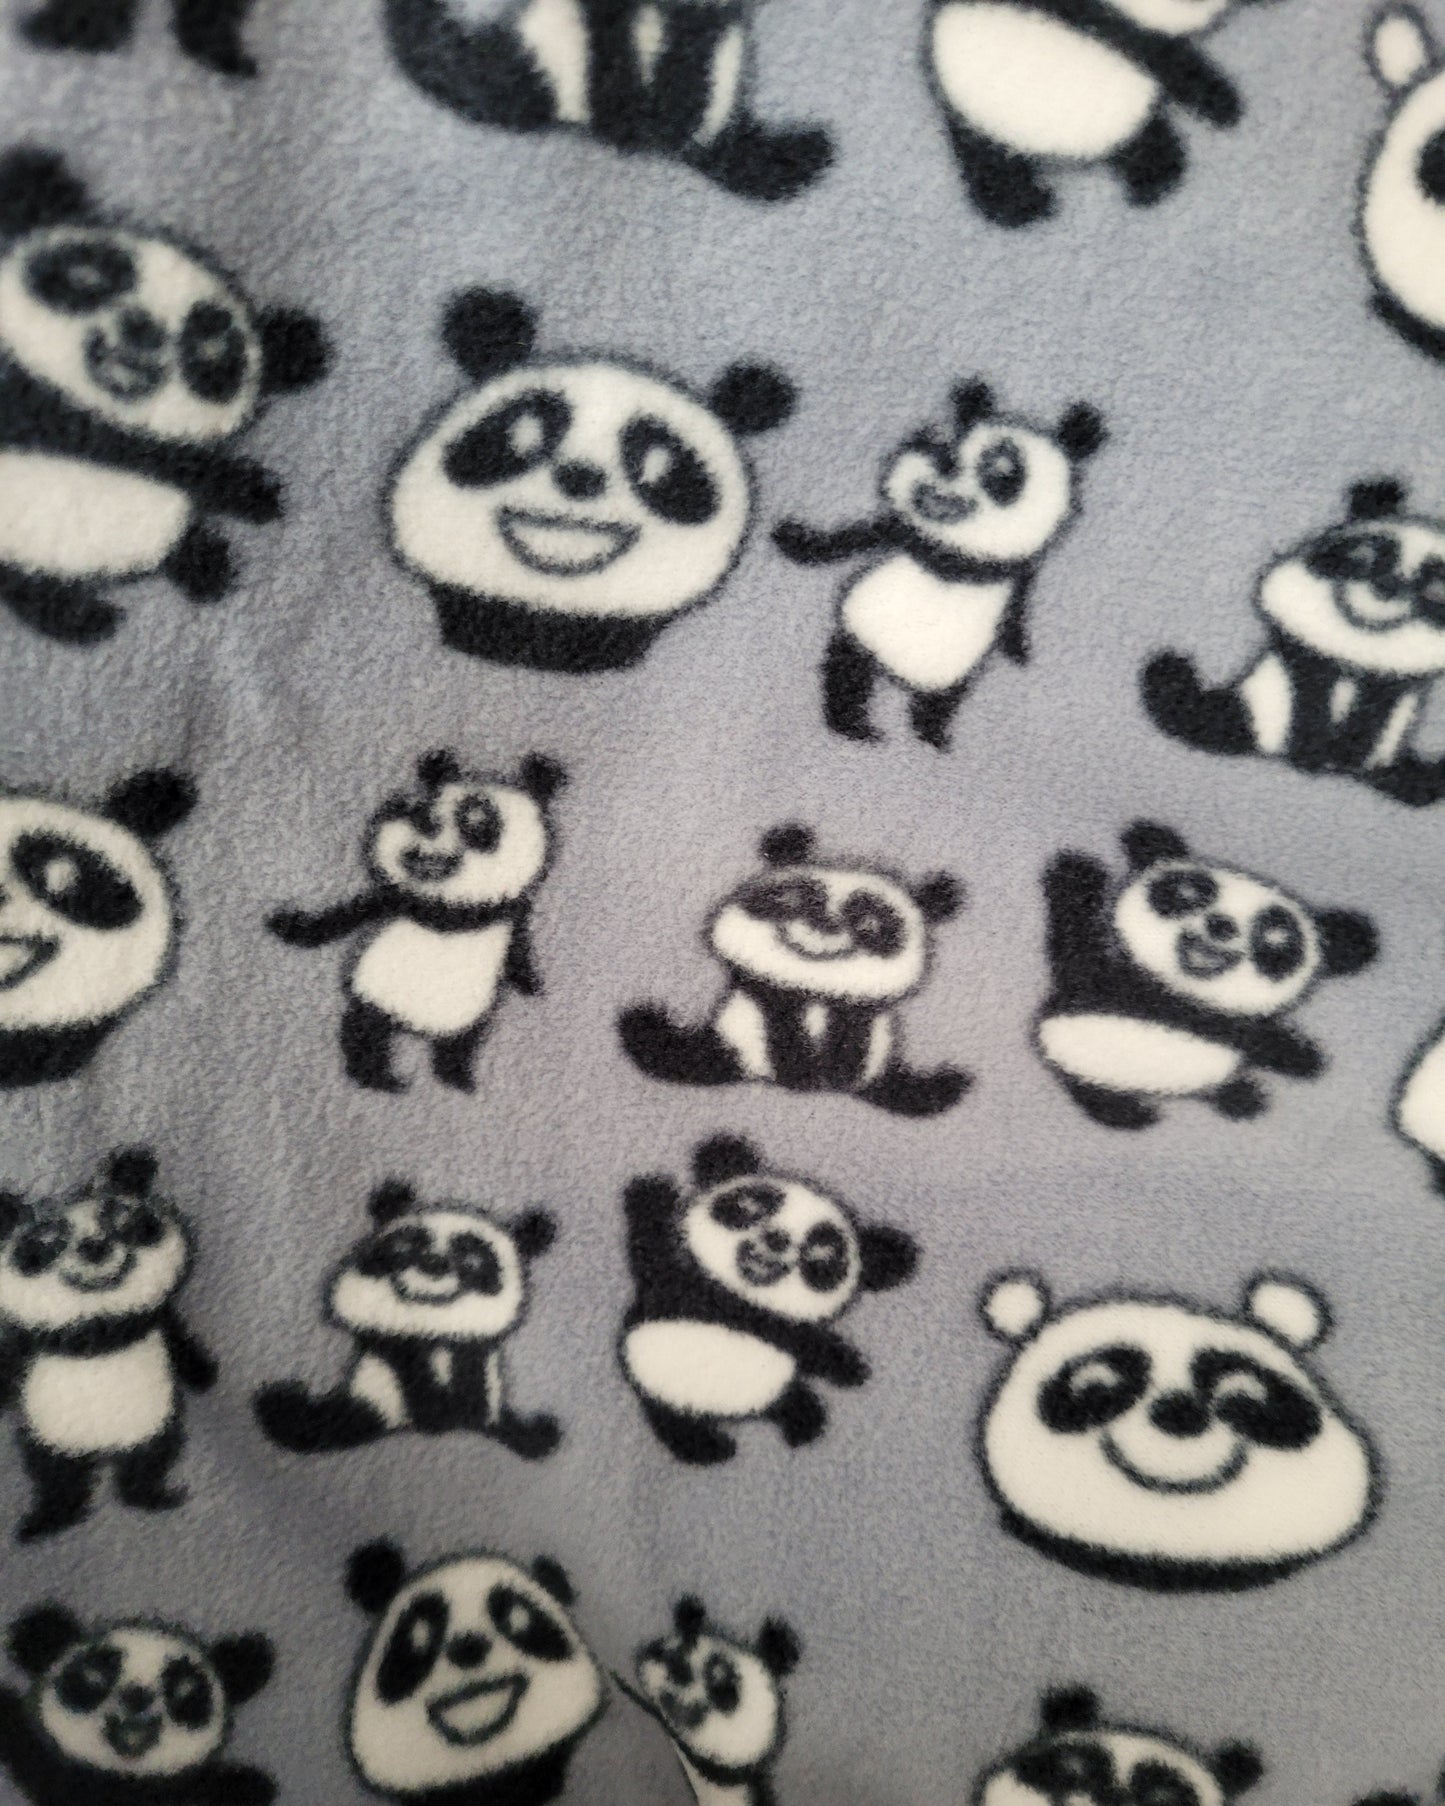 Grey with Pandas